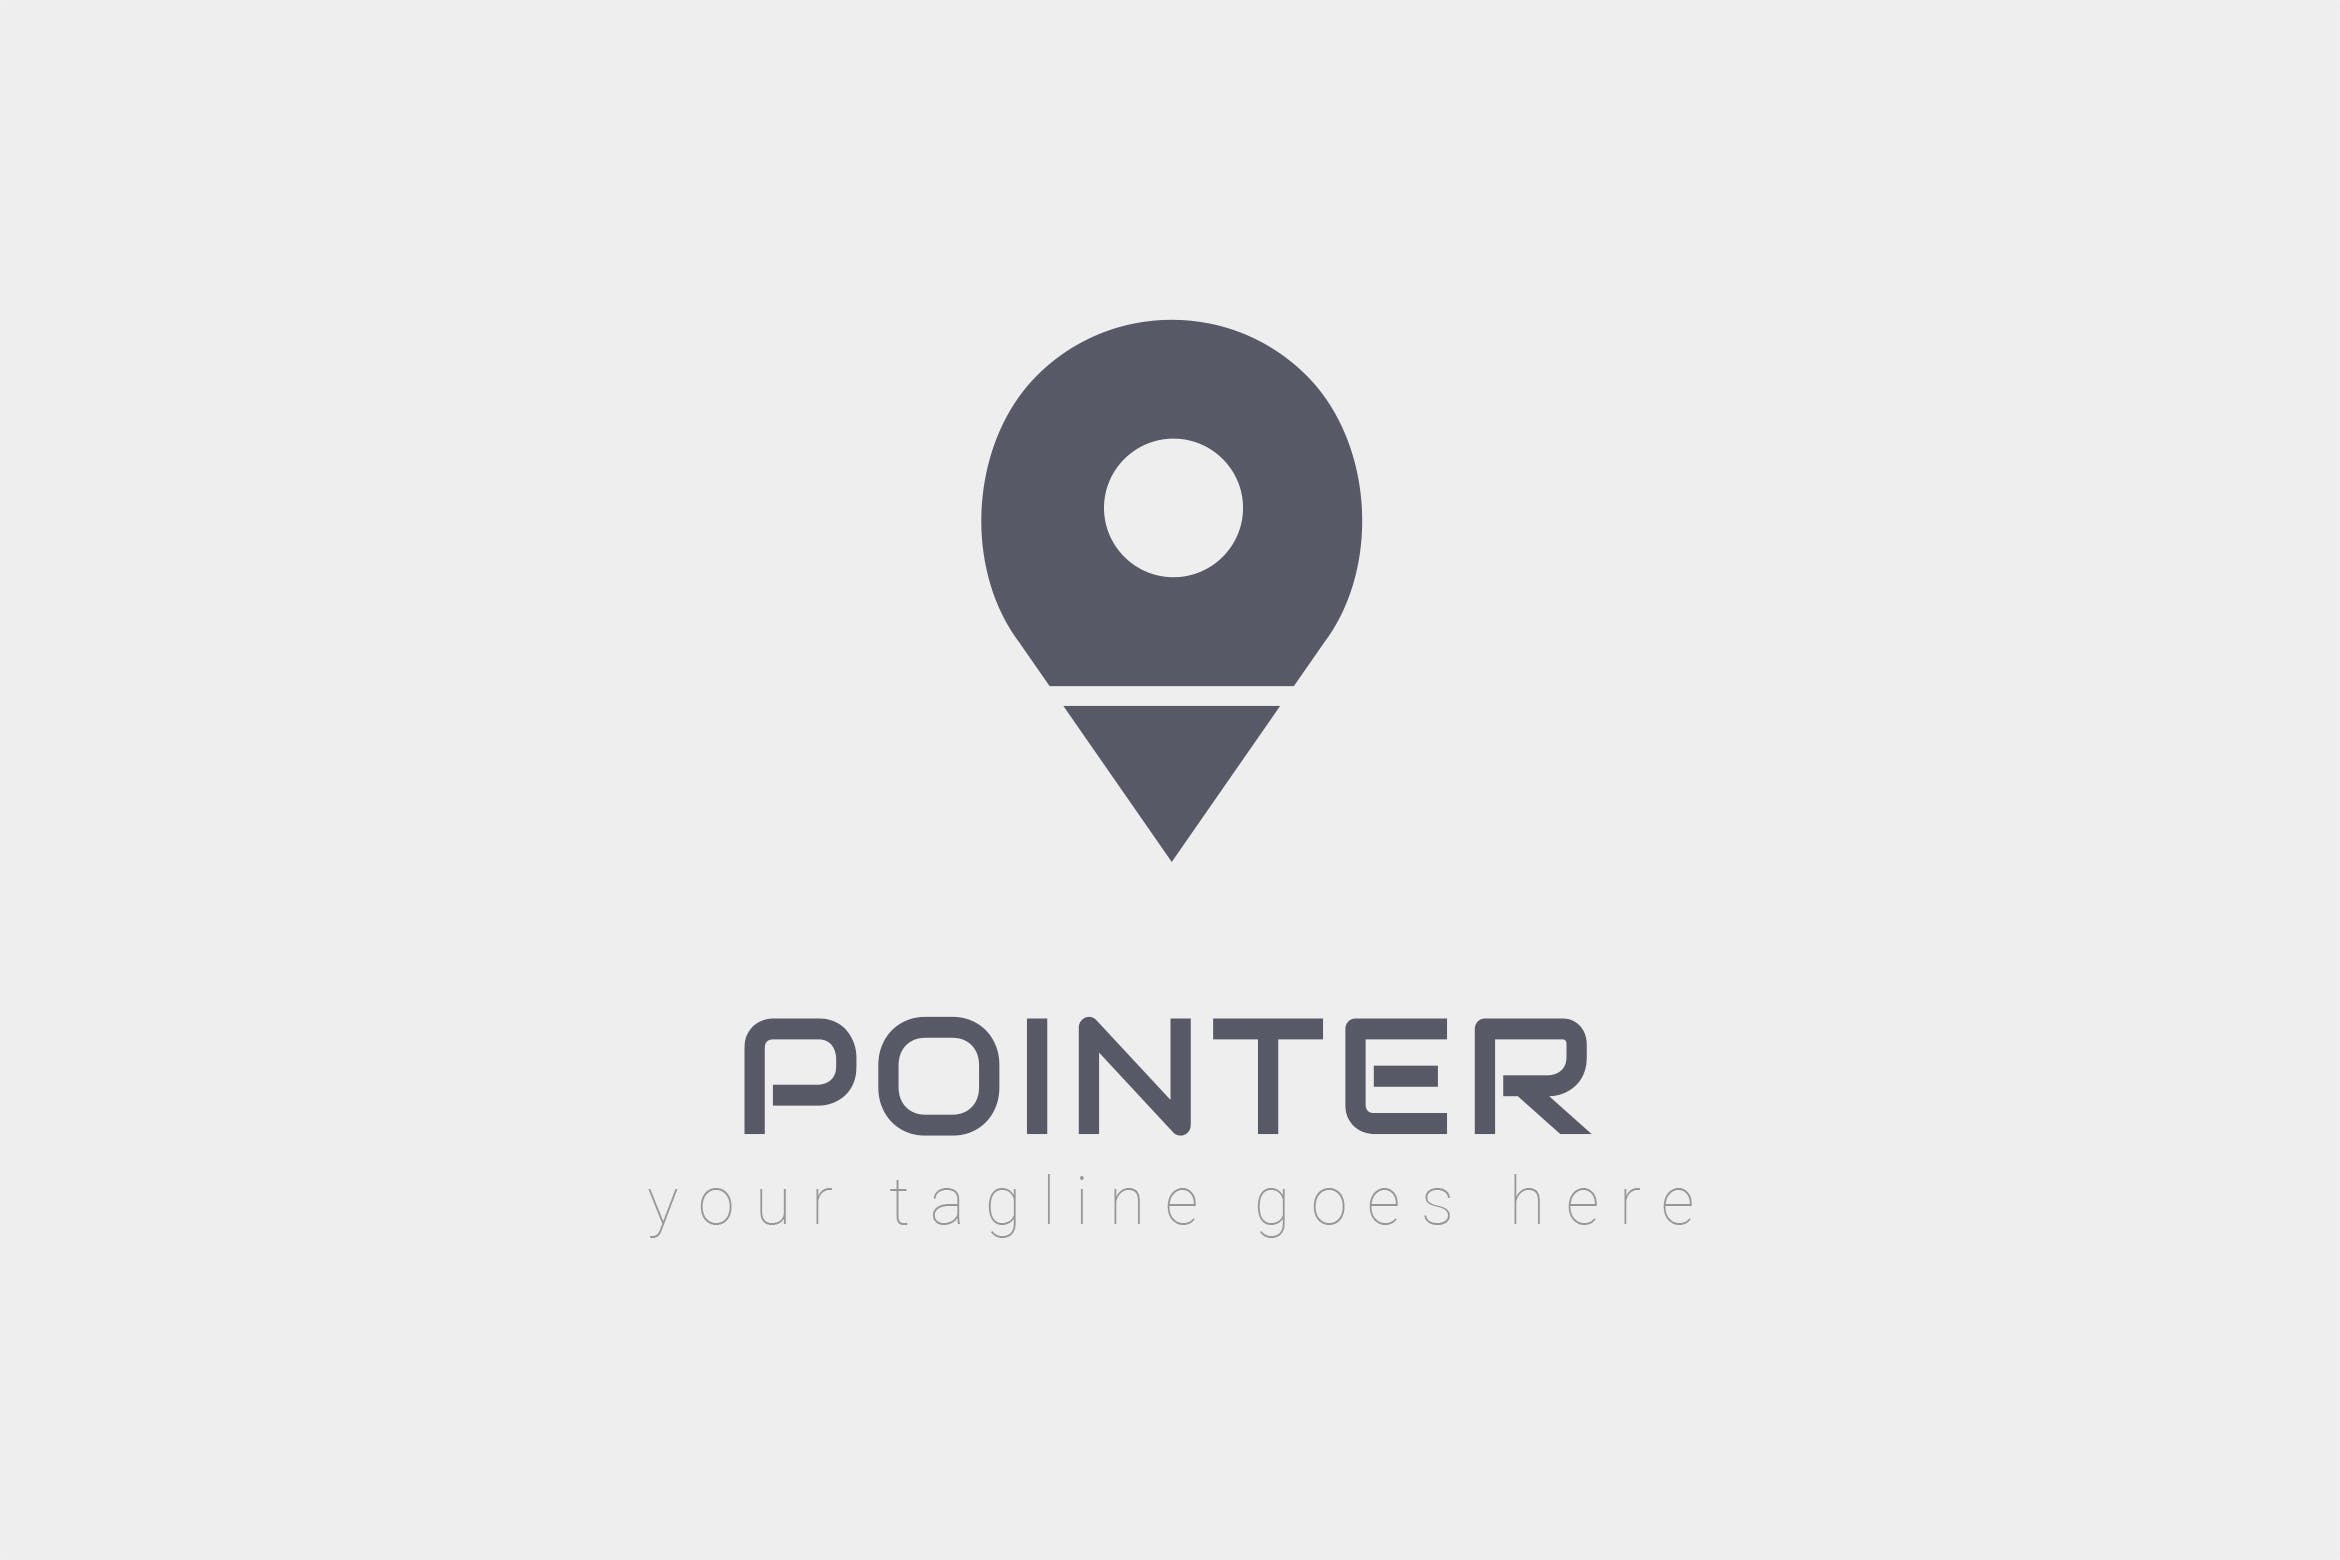 旅游/地图品牌Logo设计素材库精选模板 Pointer – Logo Design插图